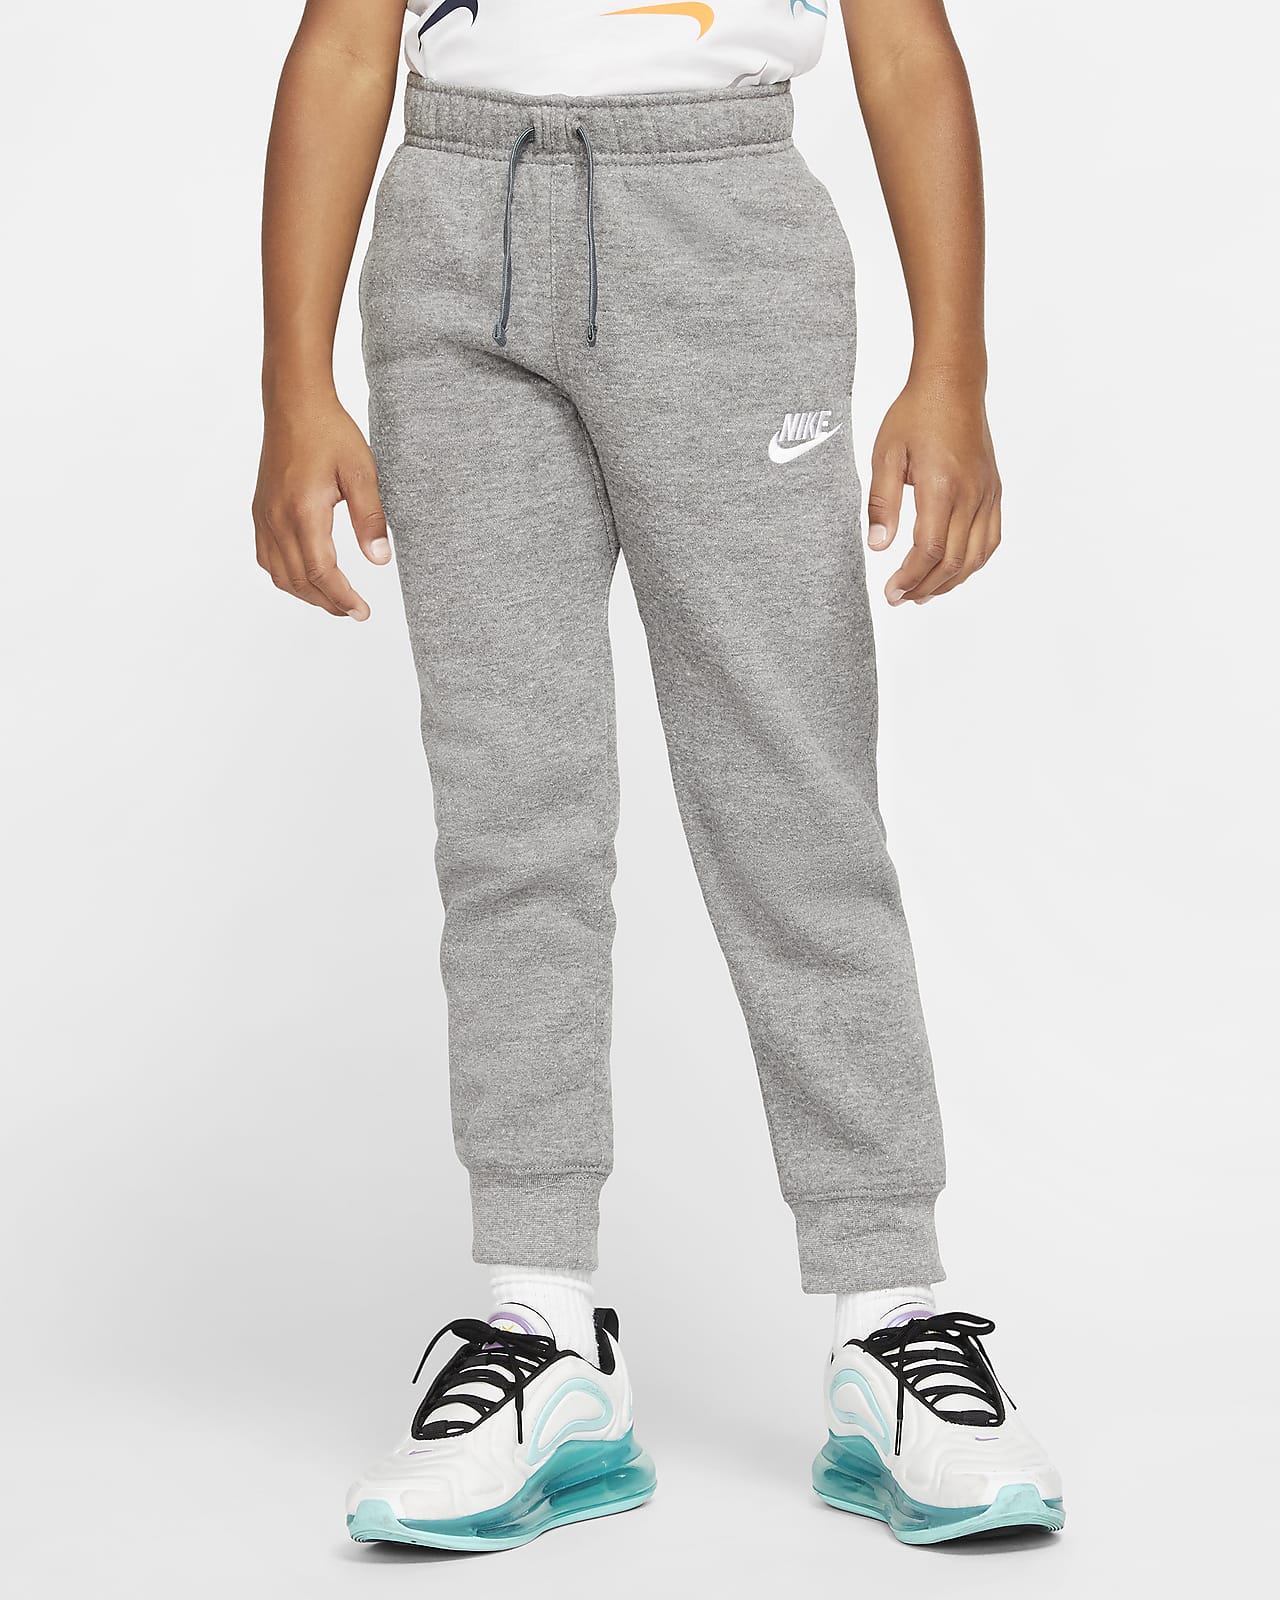 Pantaloni Nike Sportswear Club Fleece - Bambini